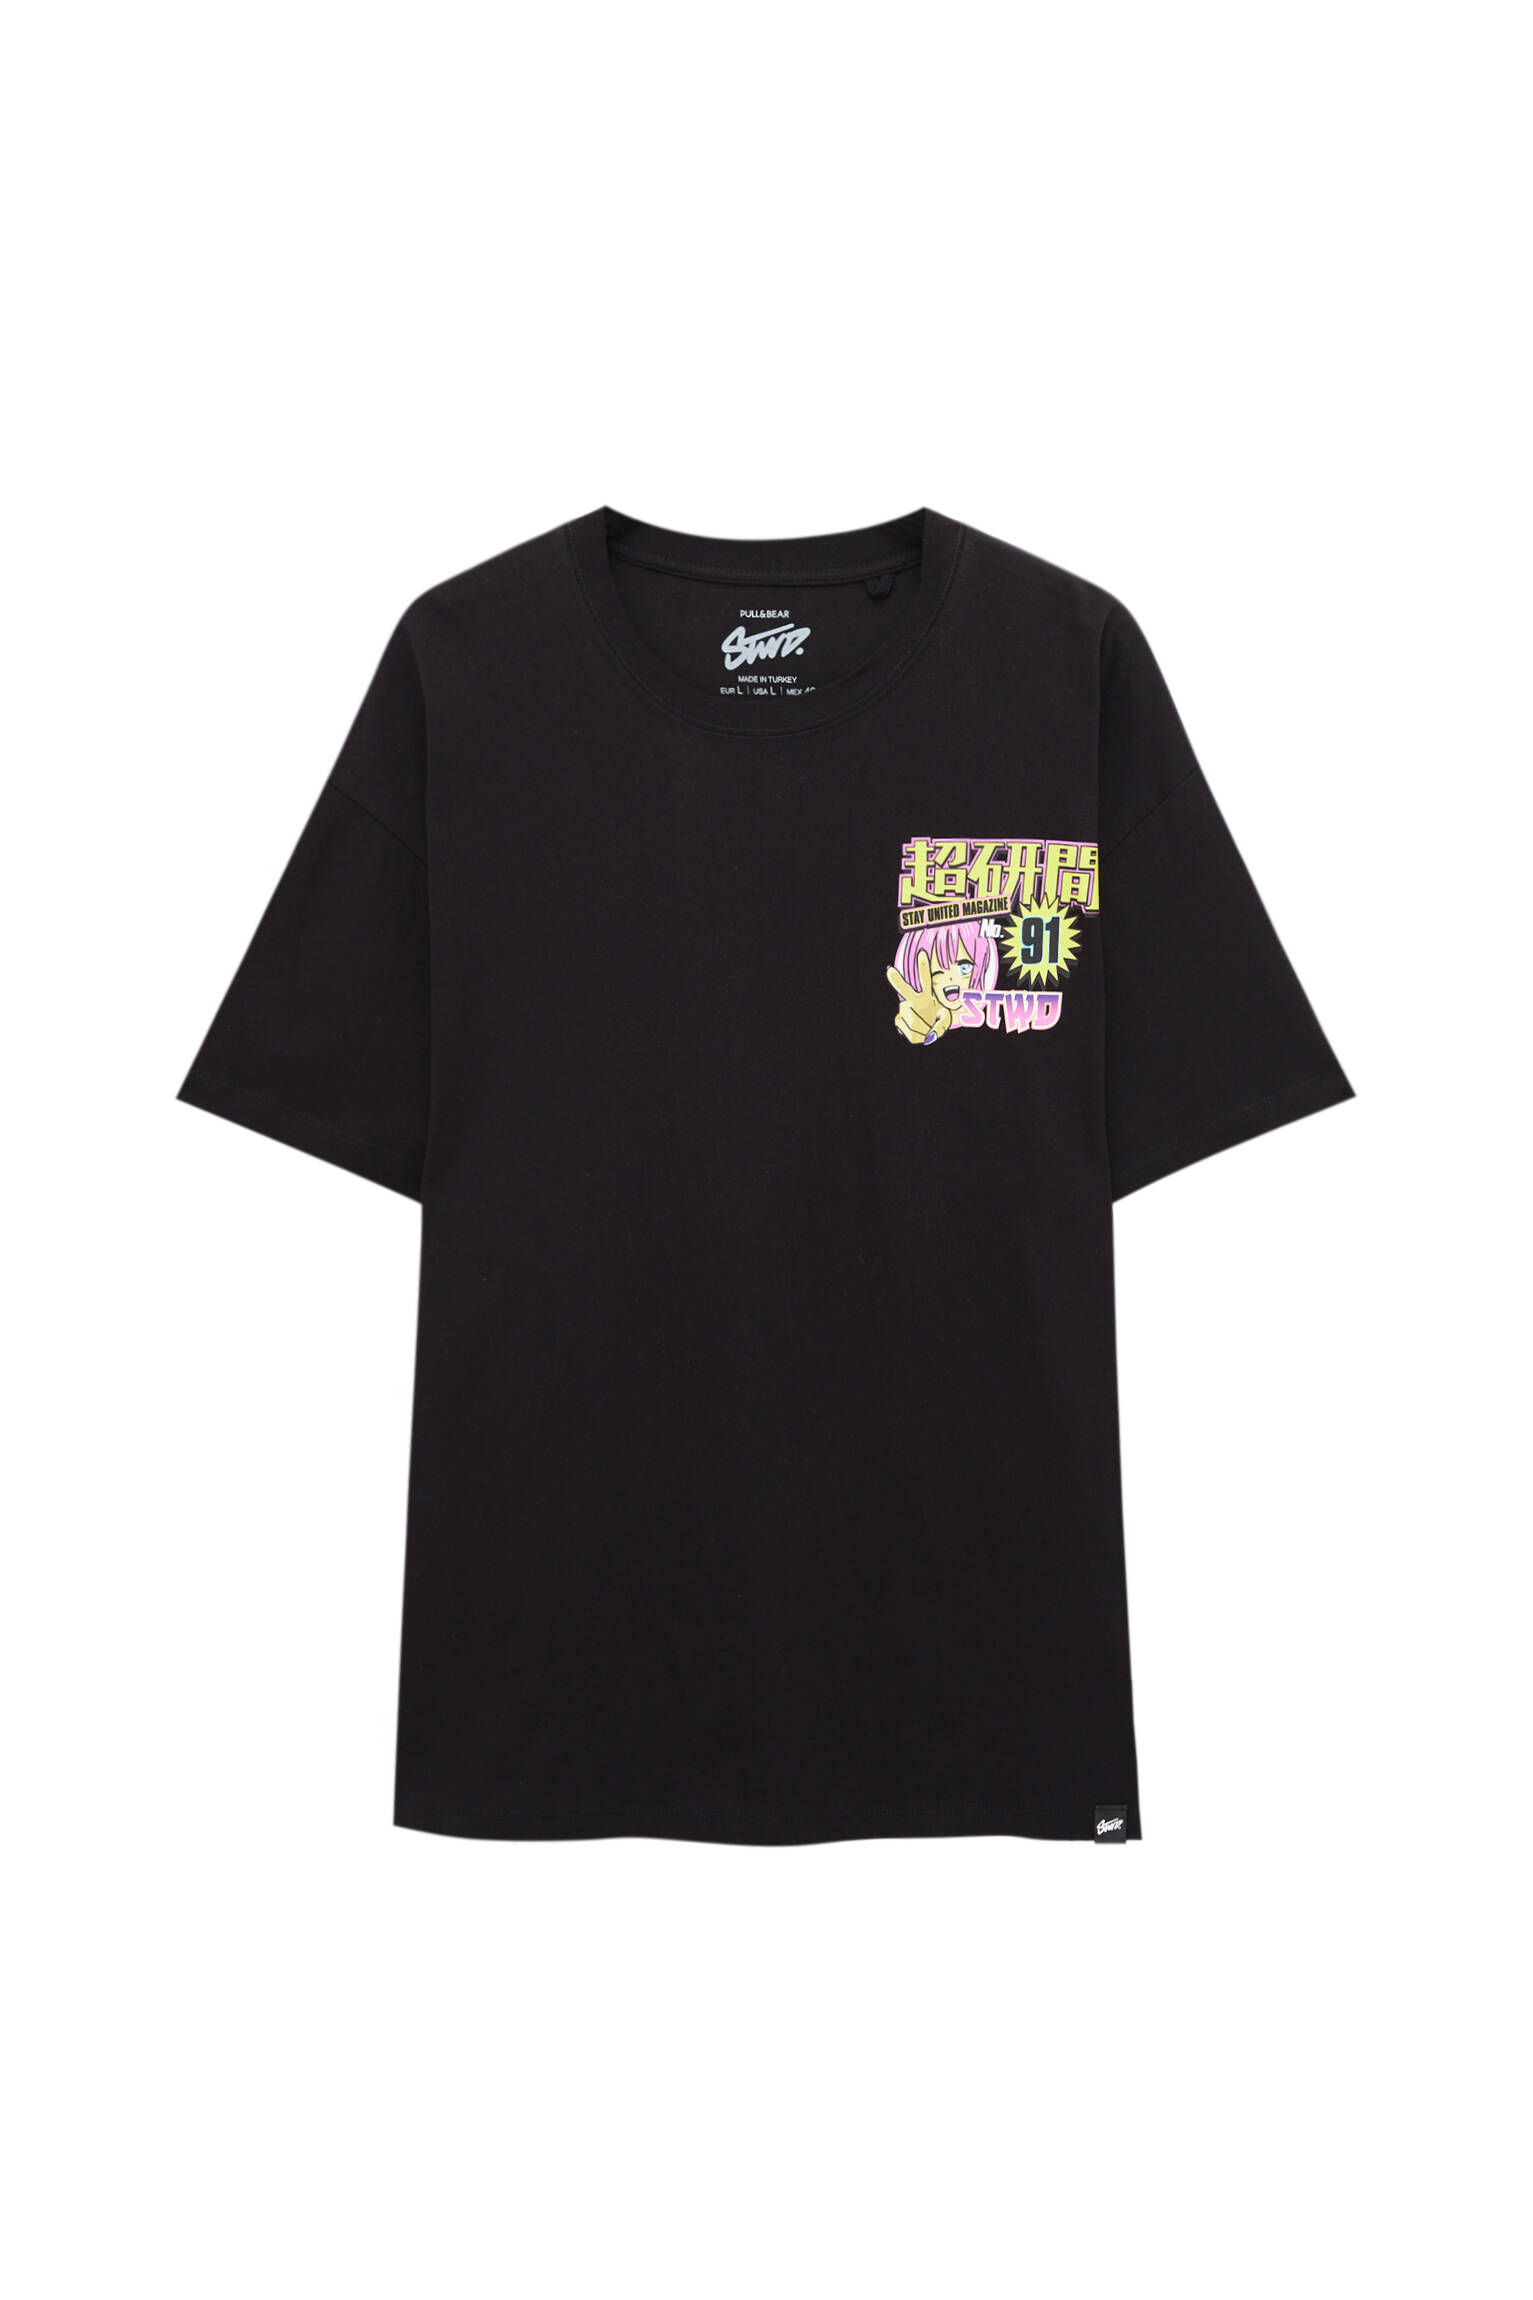 Pull&bear Homme T-shirt à Manches Courtes Et Col Rond, Avec Inscription De Style Anime. Noir S